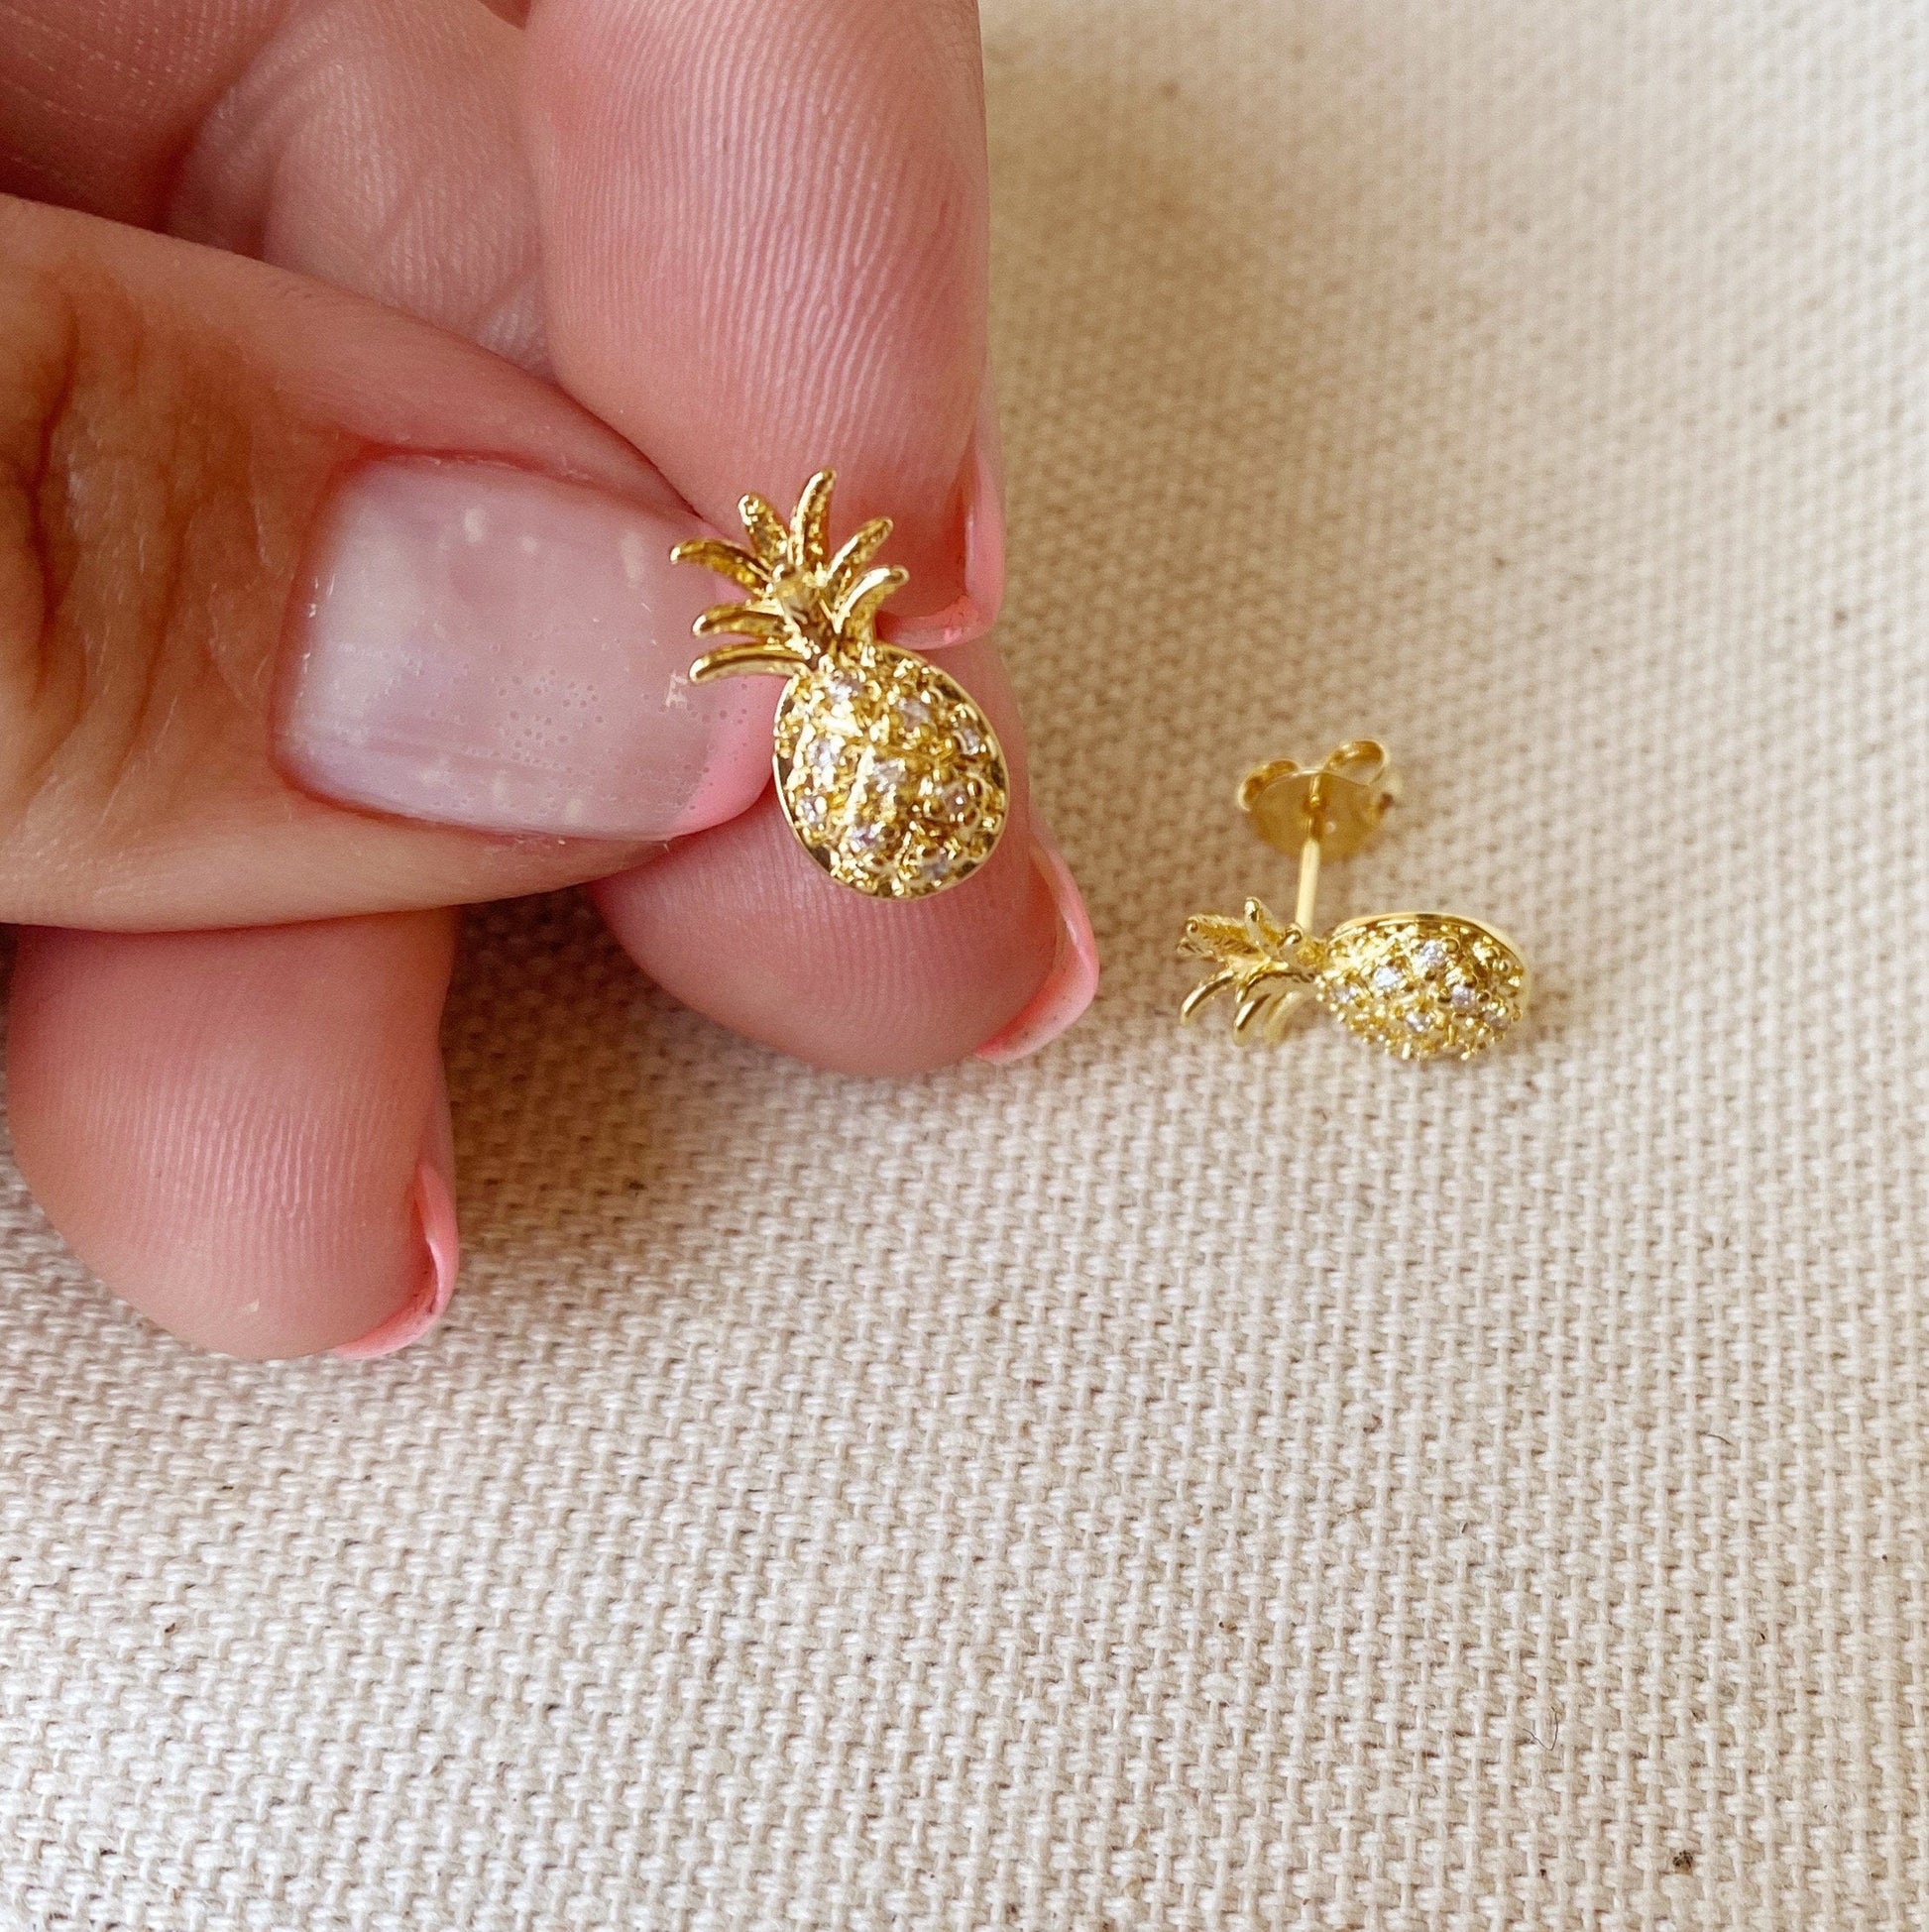 GoldFi 18k Gold Filled Pineapple Stud Earrings